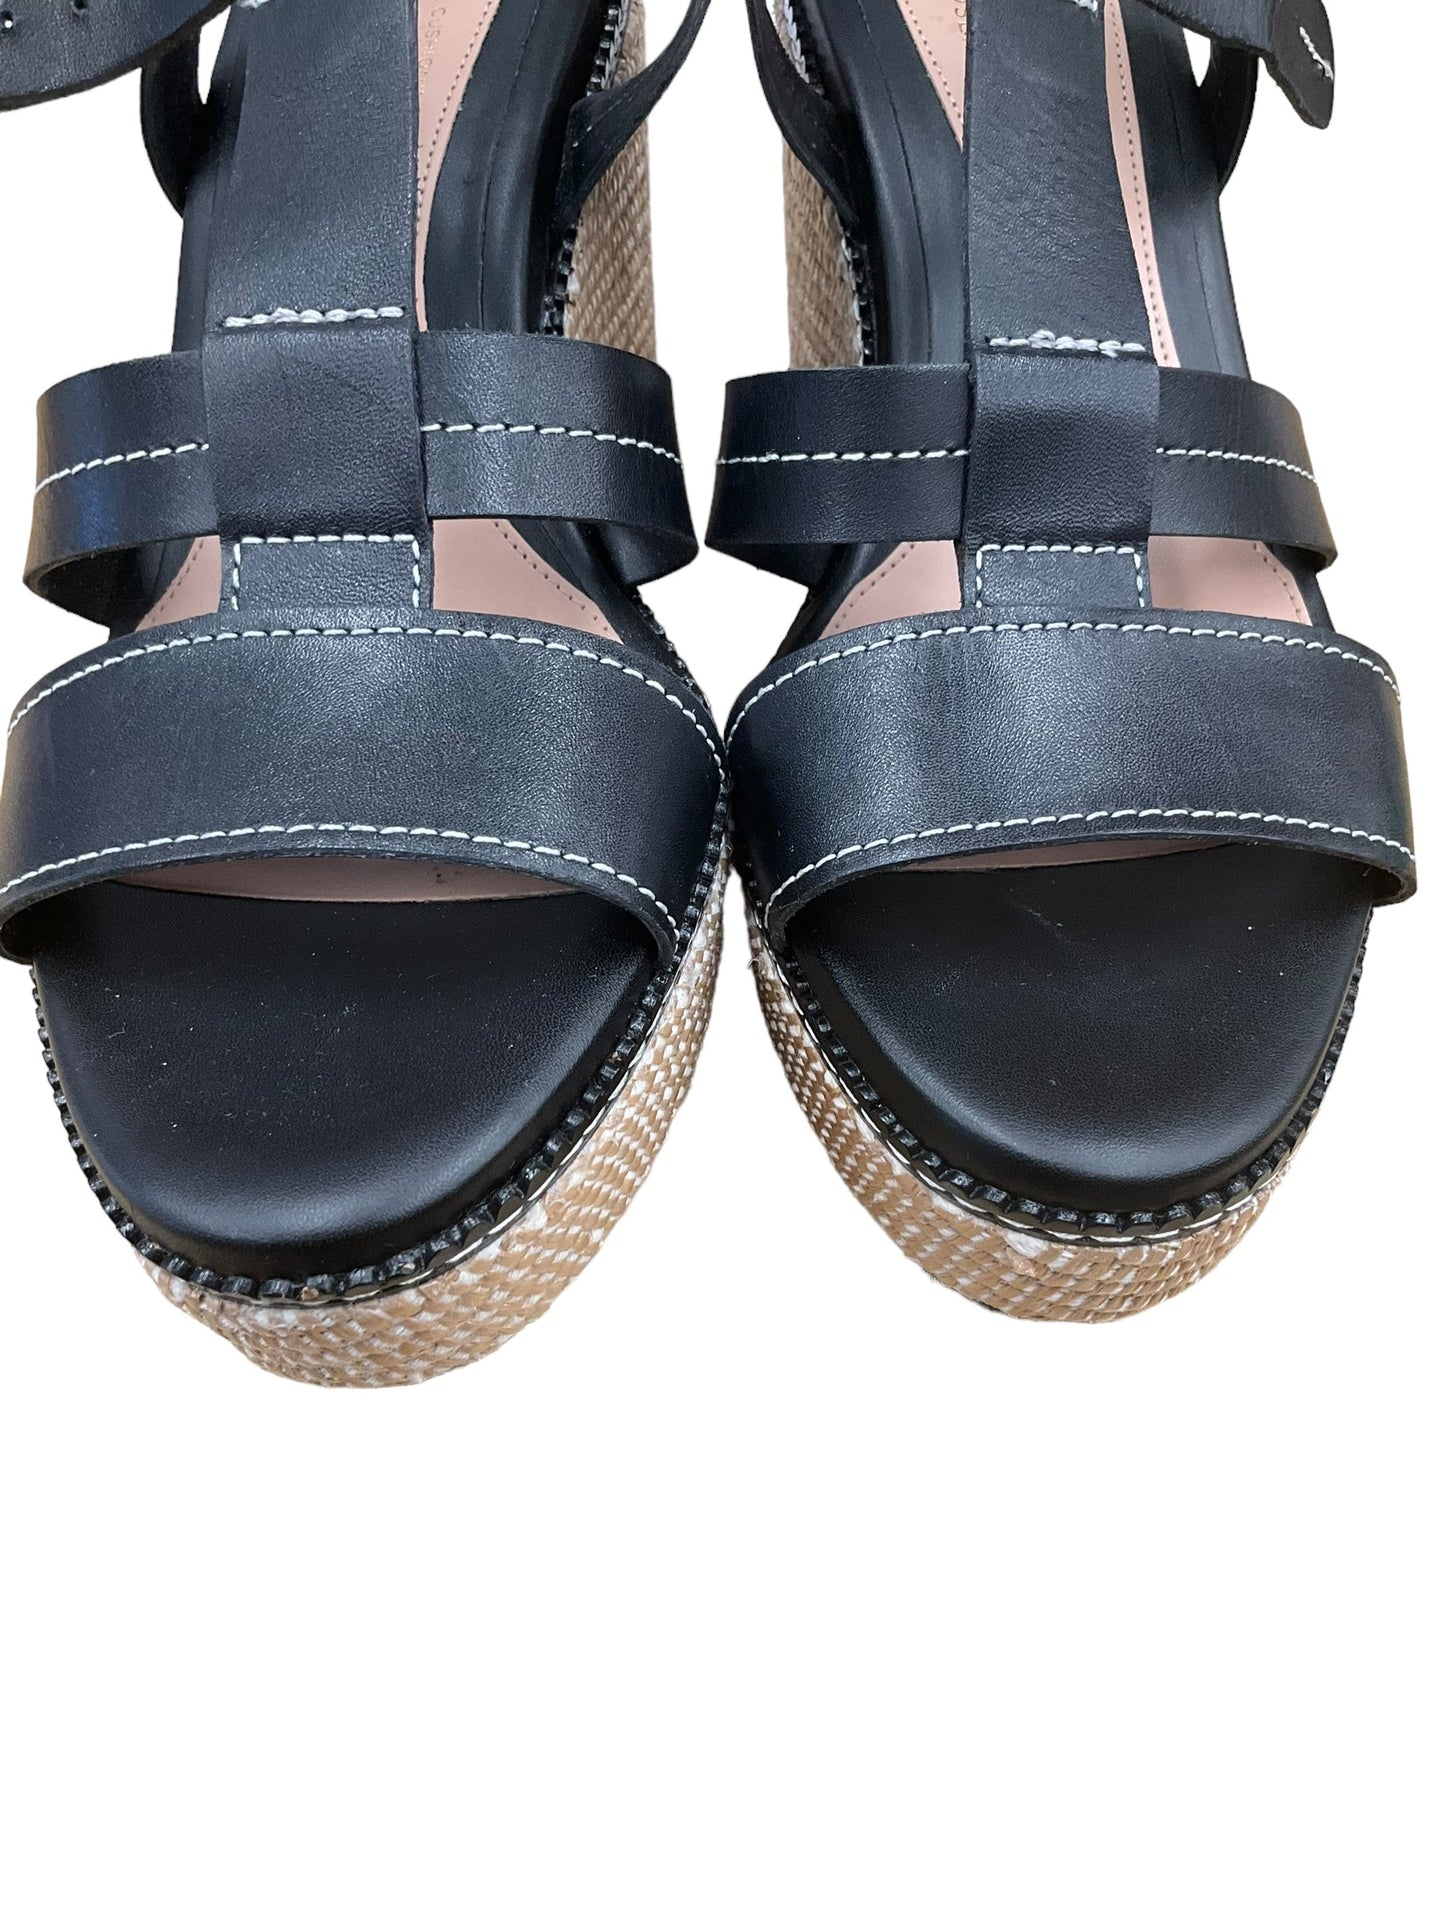 Black Sandals Heels Wedge Cole-haan, Size 8